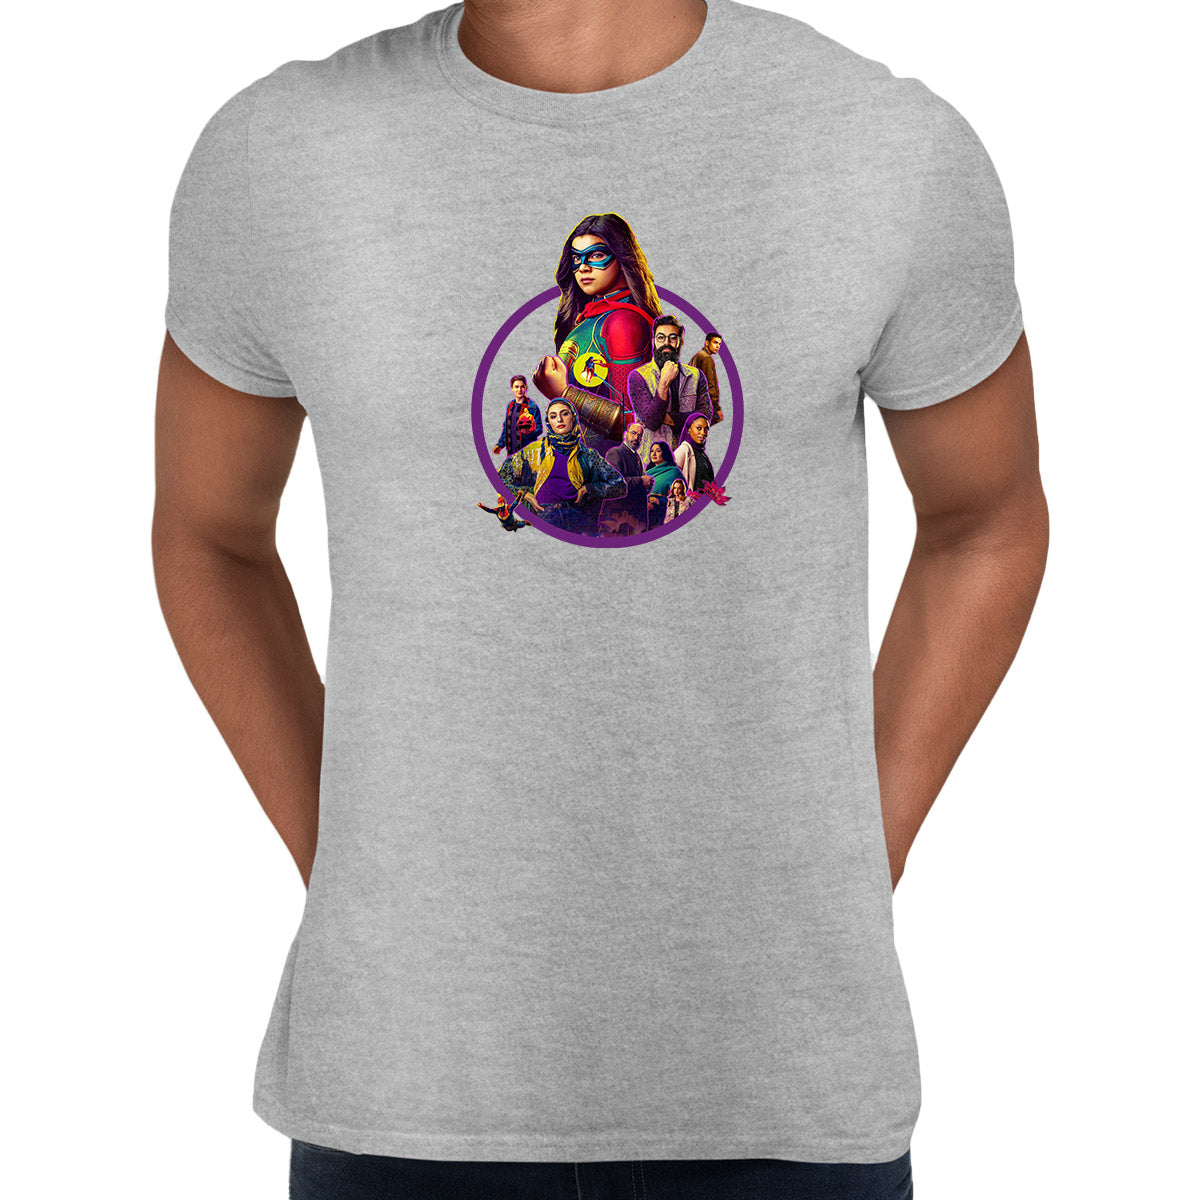 Ms Marvel Adult T-shirt Pakistani-American Muslim superhero - Kuzi Tees